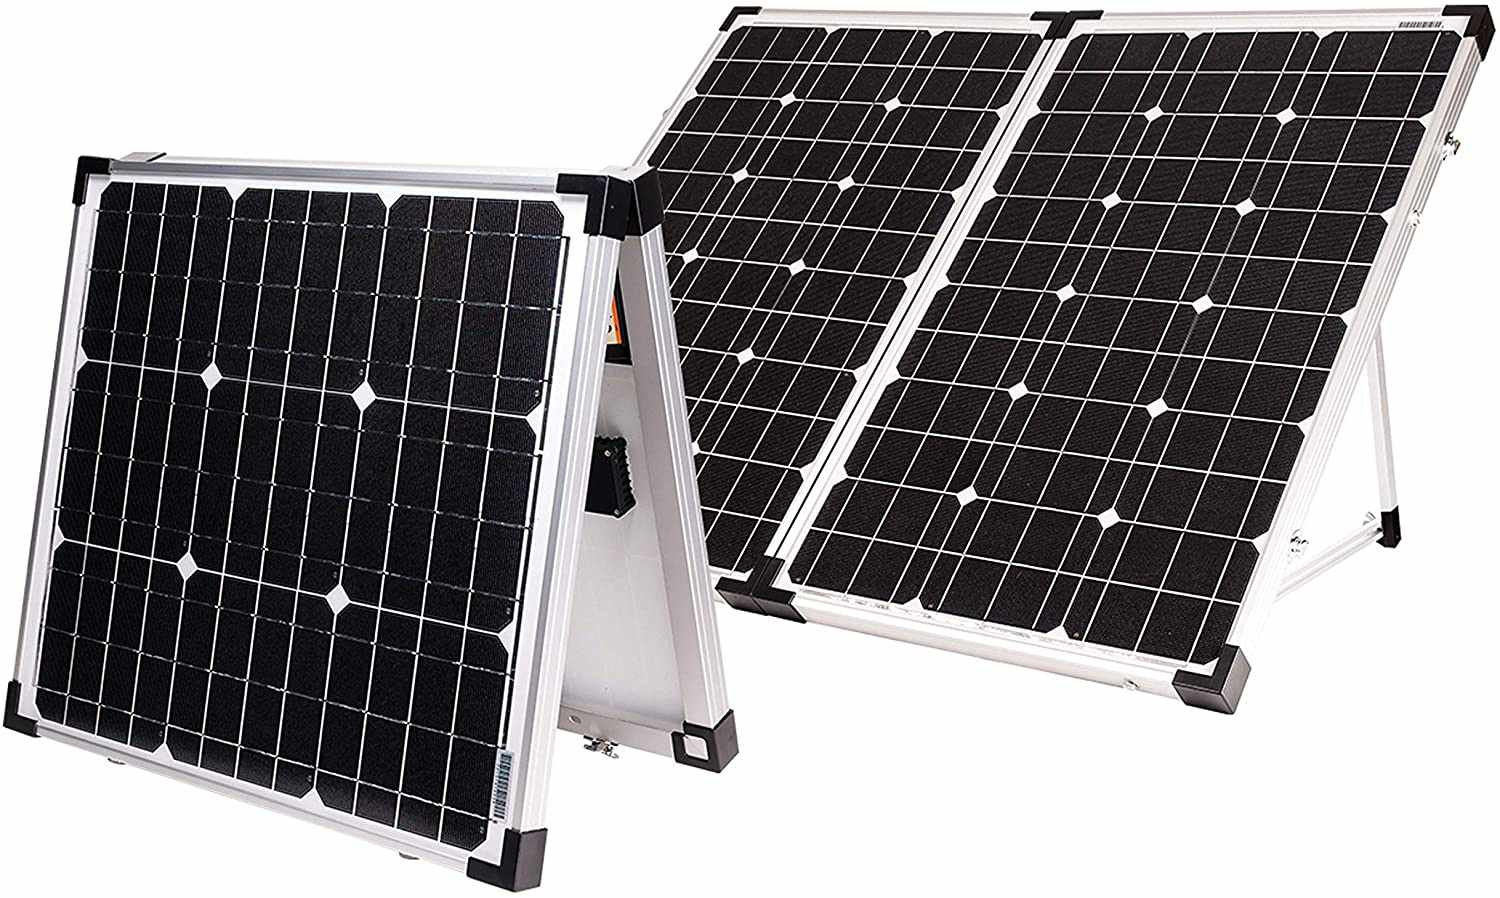 去了力量!GP-PSK-130 130瓦便携式折叠太阳能套件，10安培太阳能控制器